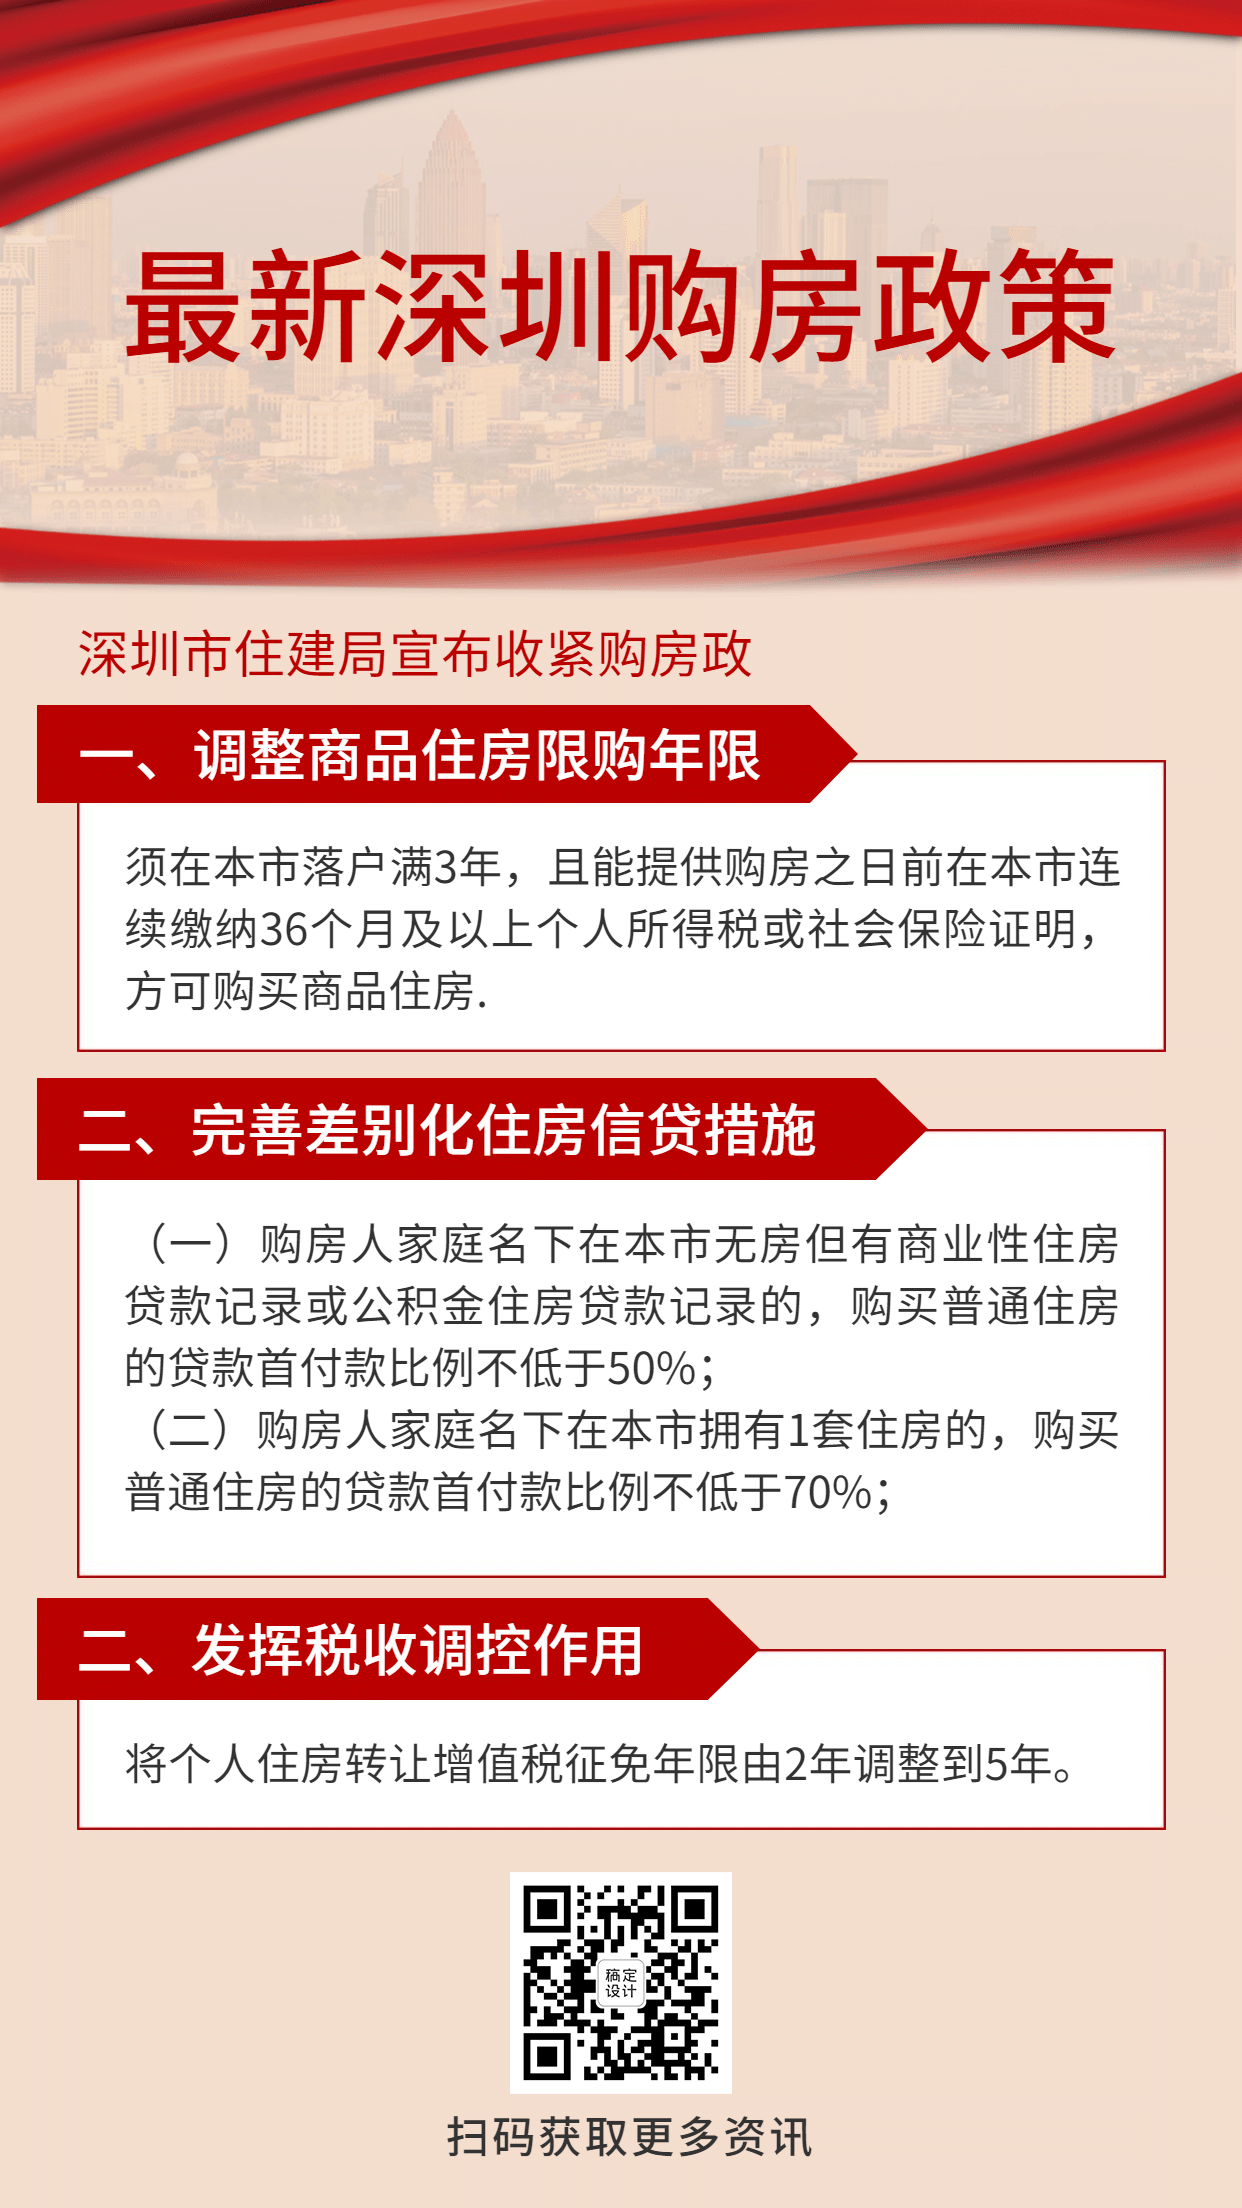 地产深圳房产消息政策手机简约海报